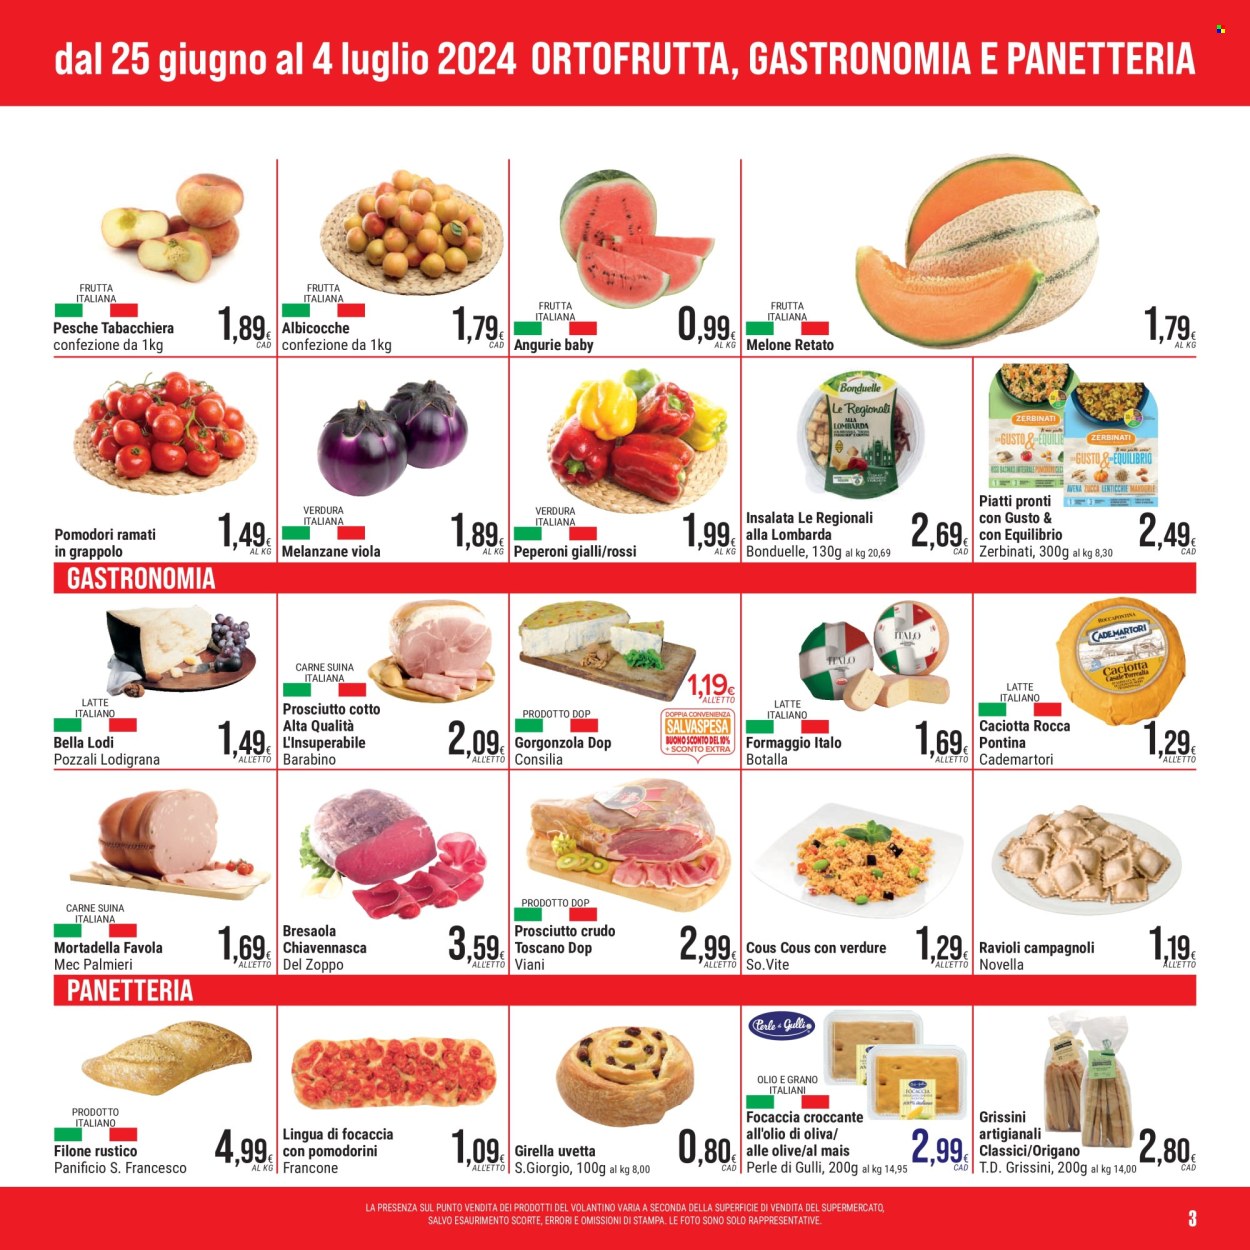 thumbnail - Volantino Gulliver - 25/6/2024 - 4/7/2024 - Prodotti in offerta - focaccia, pane rustico, melanzane, Bonduelle, peperoni, pomodori, pesche, albicocche, anguria, melone, pesche piatte, melone retato, cous cous, prosciutto, bresaola, prosciutto cotto, prosciutto crudo, mortadella, formaggio, caciotta, gorgonzola, grissini, ravioli, origano, uvetta. Pagina 3.